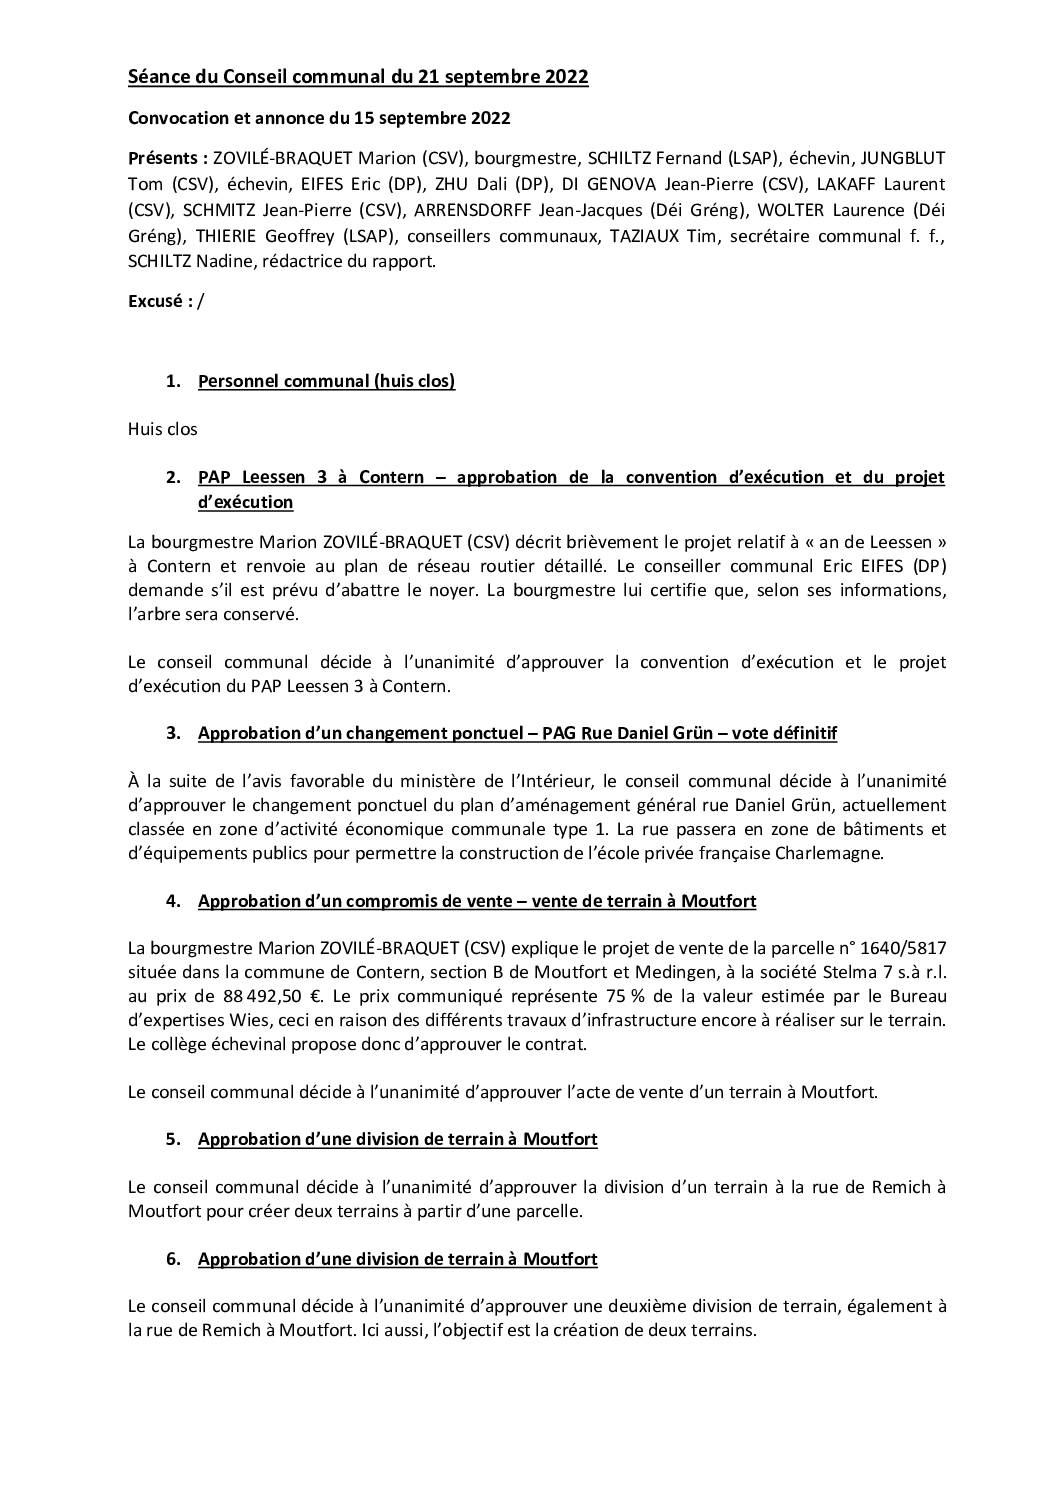 2022-09-21-Rapport-du-Conseil-communal